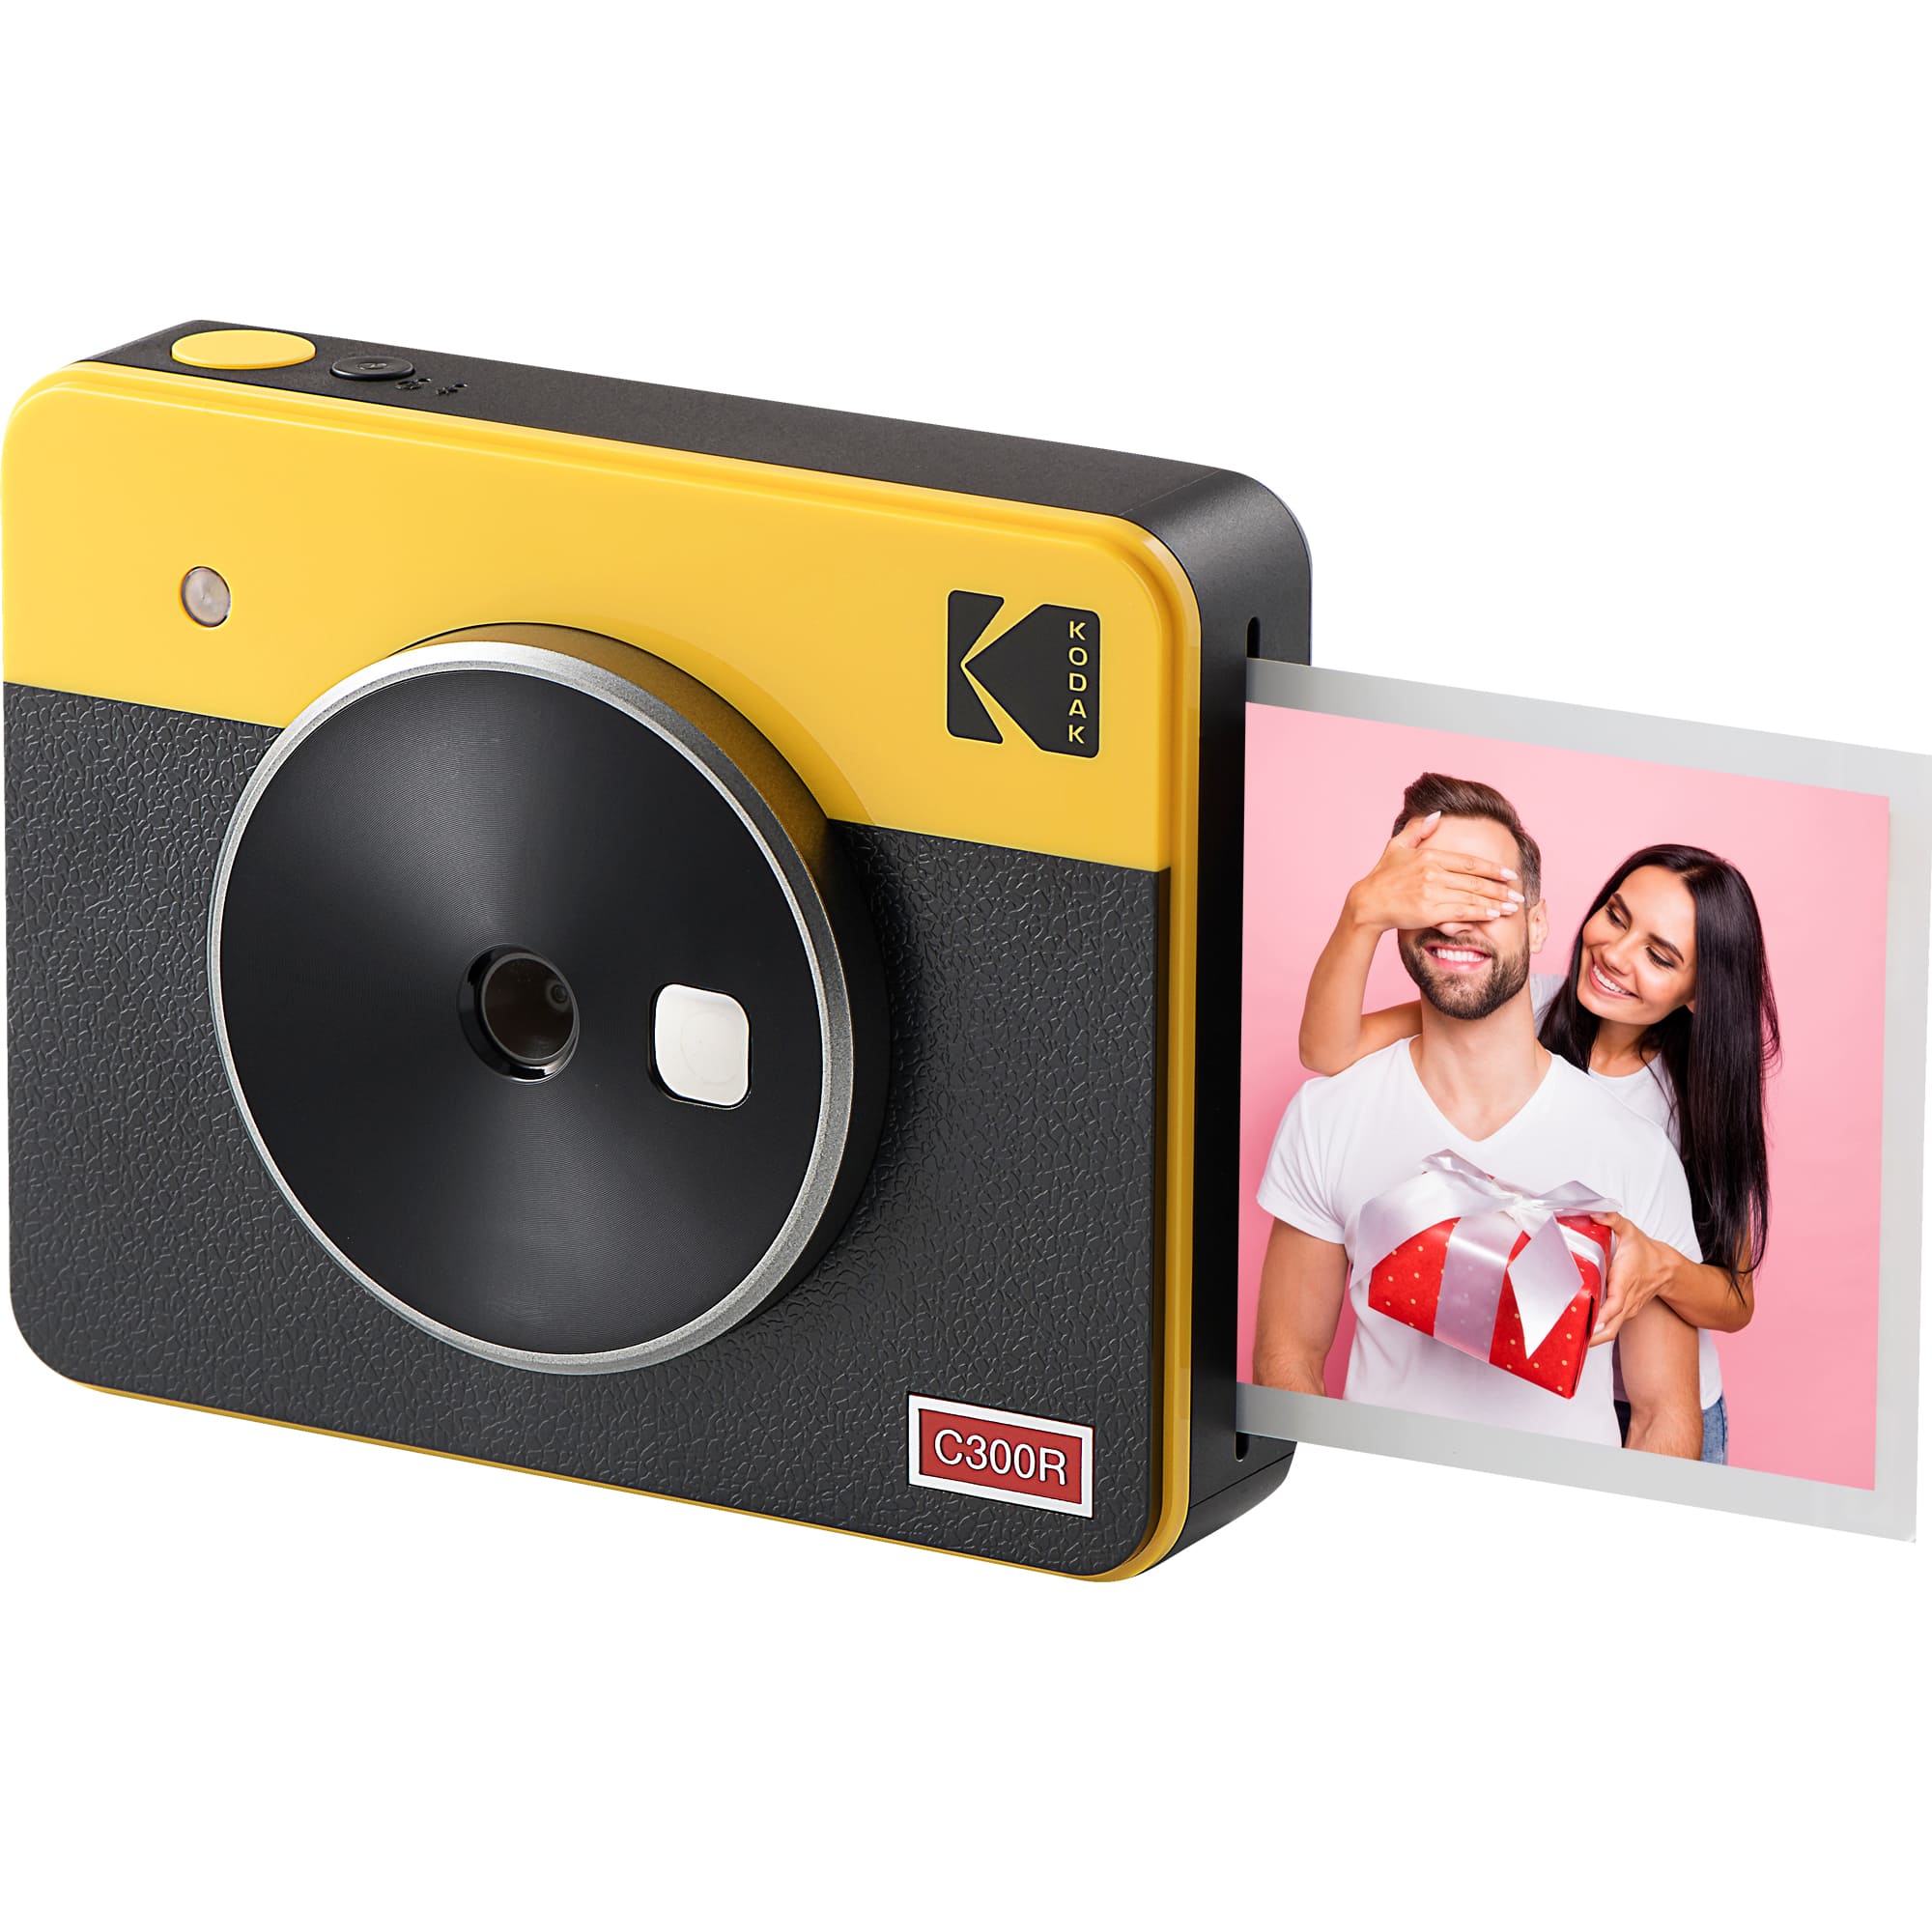 Kodak コダック インスタントカメラ Mini Shot3 チェキ フィルム 日本初の カメラ プリンター スマホ 写真 対応 コンパクト フォトプリンター おしゃれ 本体 かわいい ポラロイド チェキカメラ プレゼント Bluetooth レトロ フィルムカメラ ポラロイドカメラ カラー